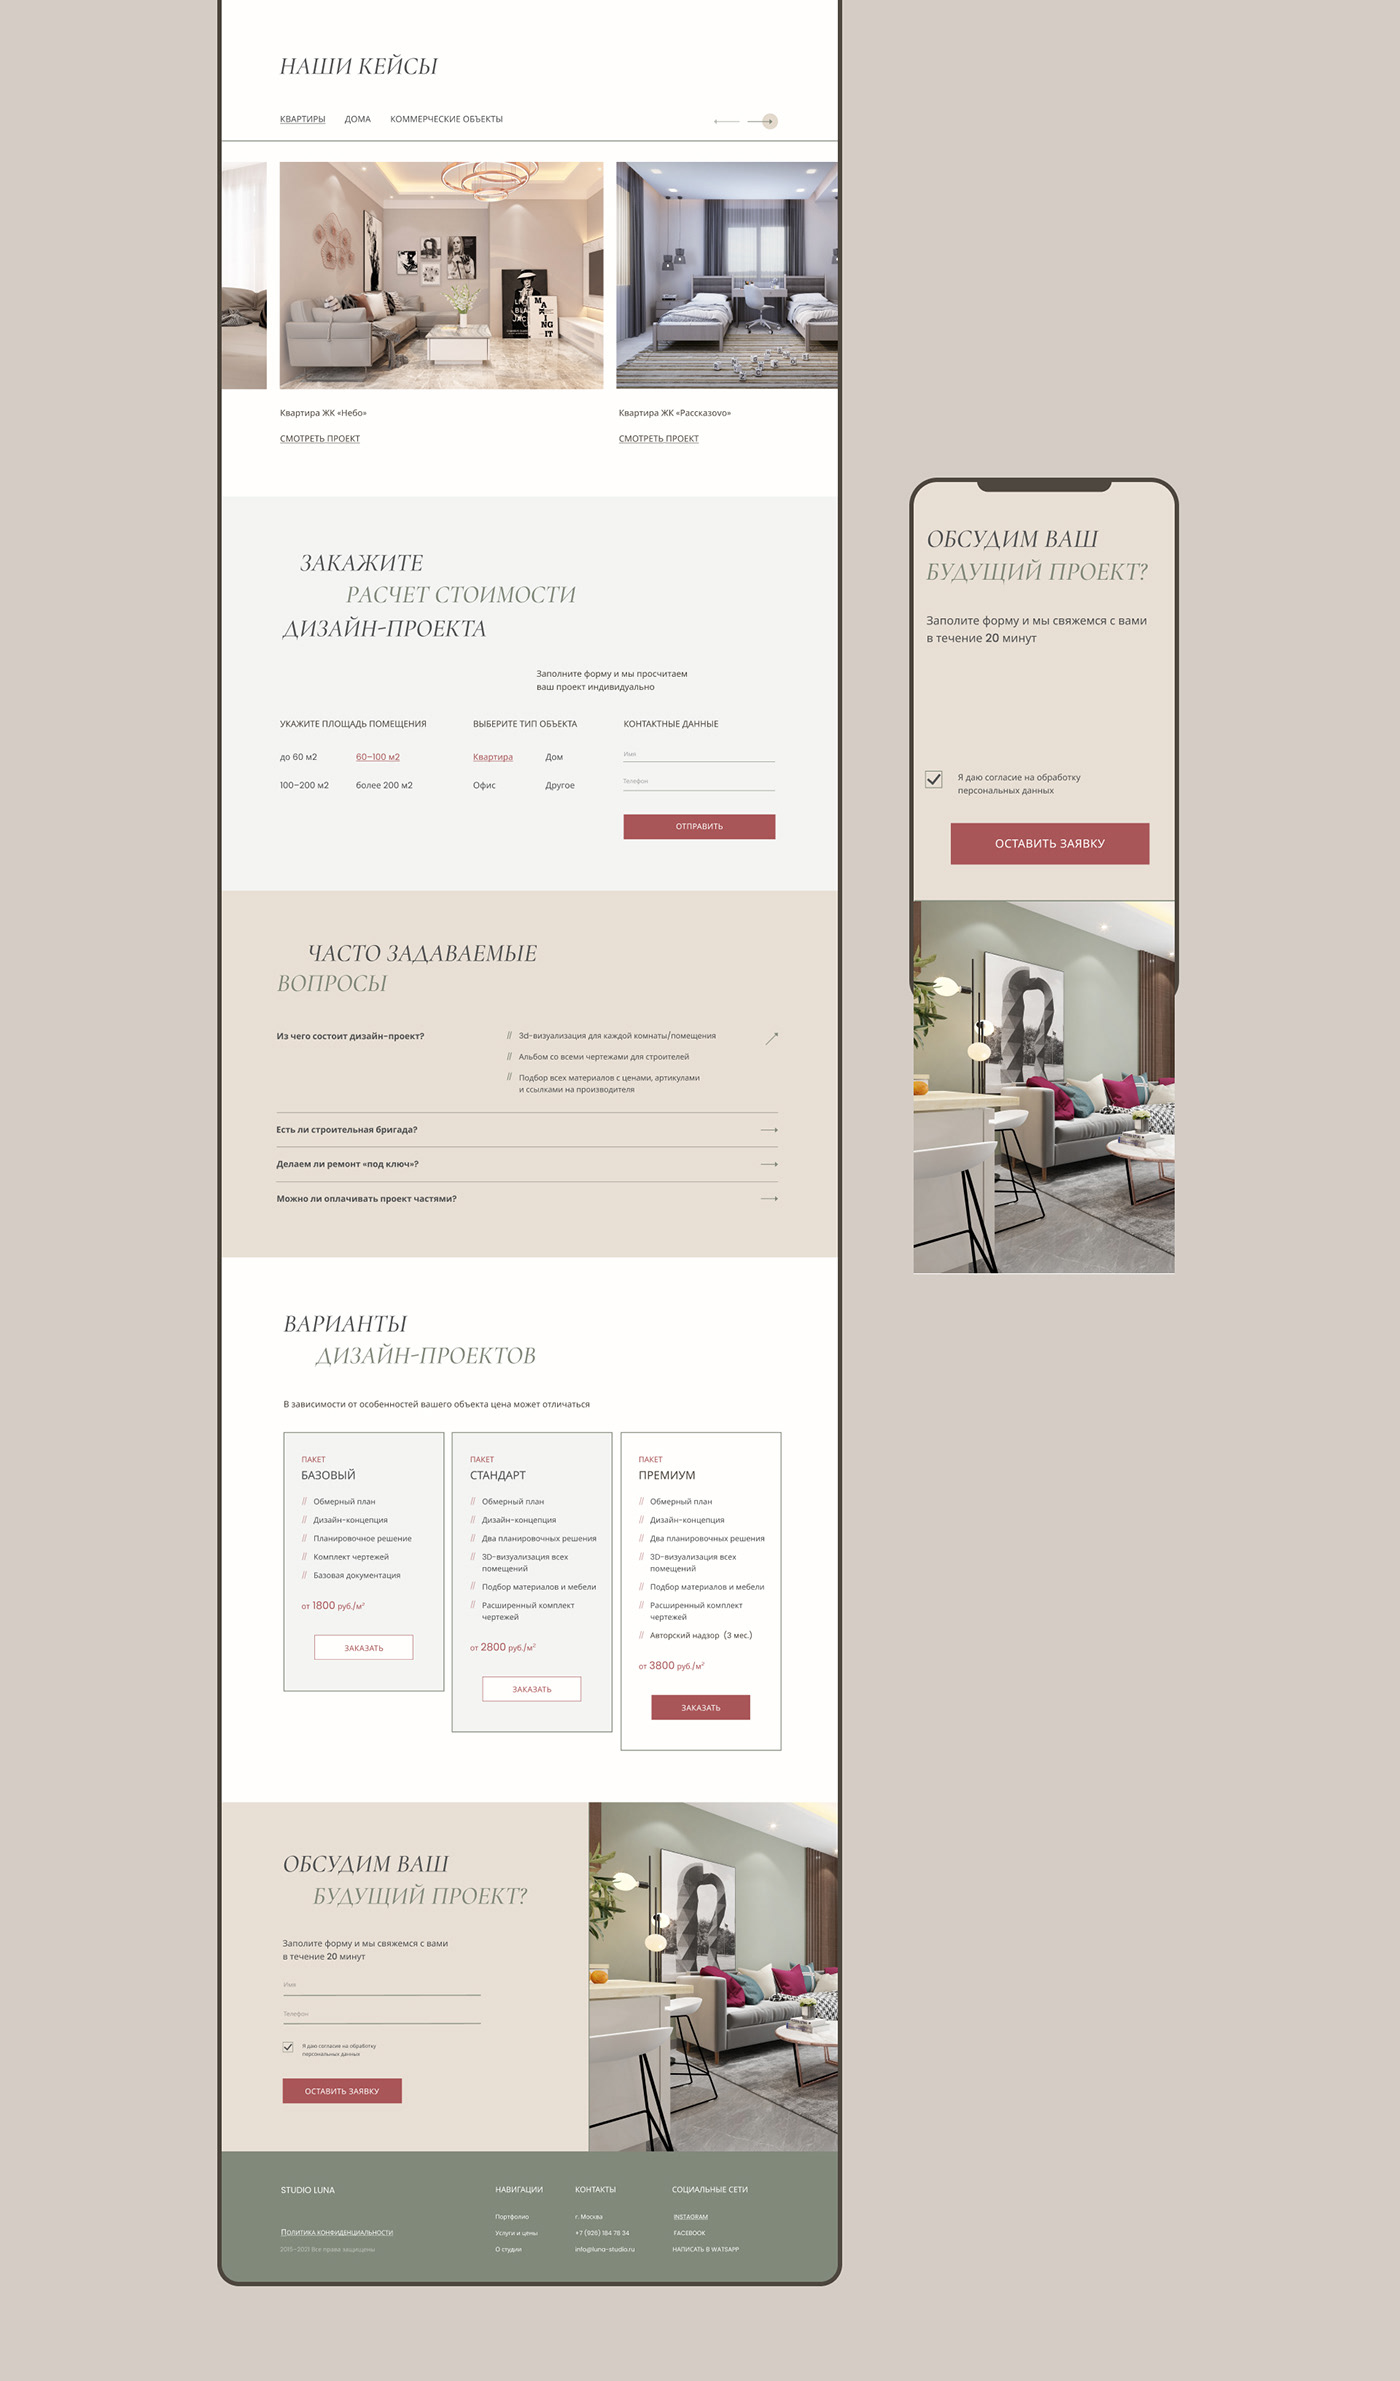 architecture decor home Interior interiordesign ui design user interface ux/ui Website